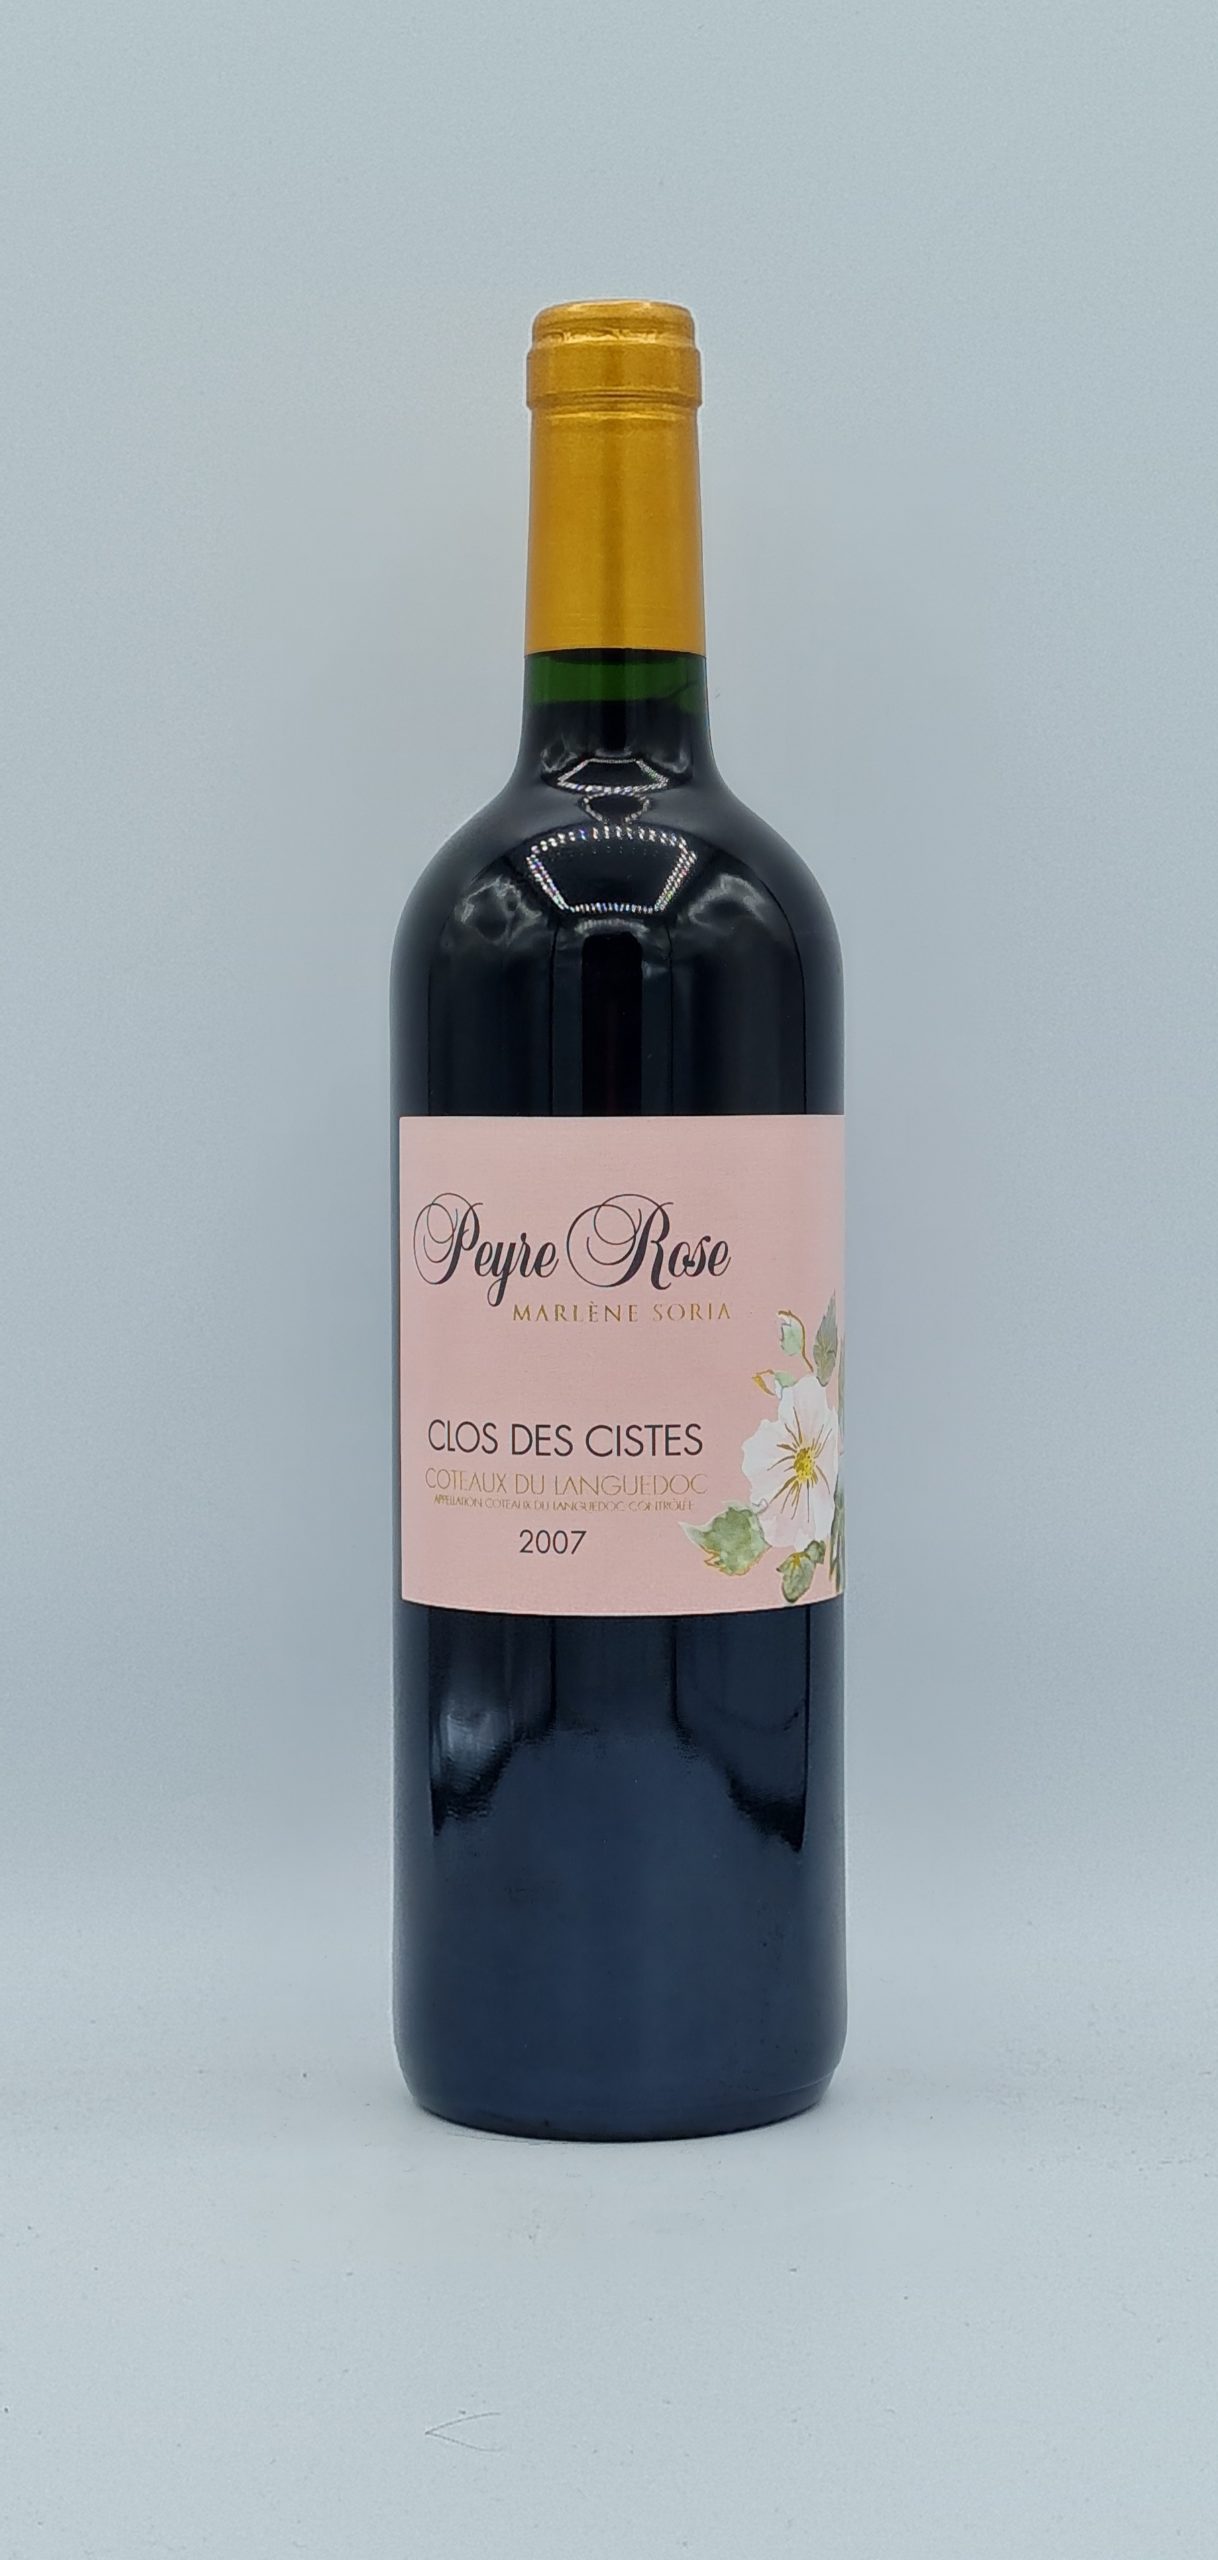 Côteaux du Languedoc 2007 “Clos des Cistes” Domaine Peyre Rose